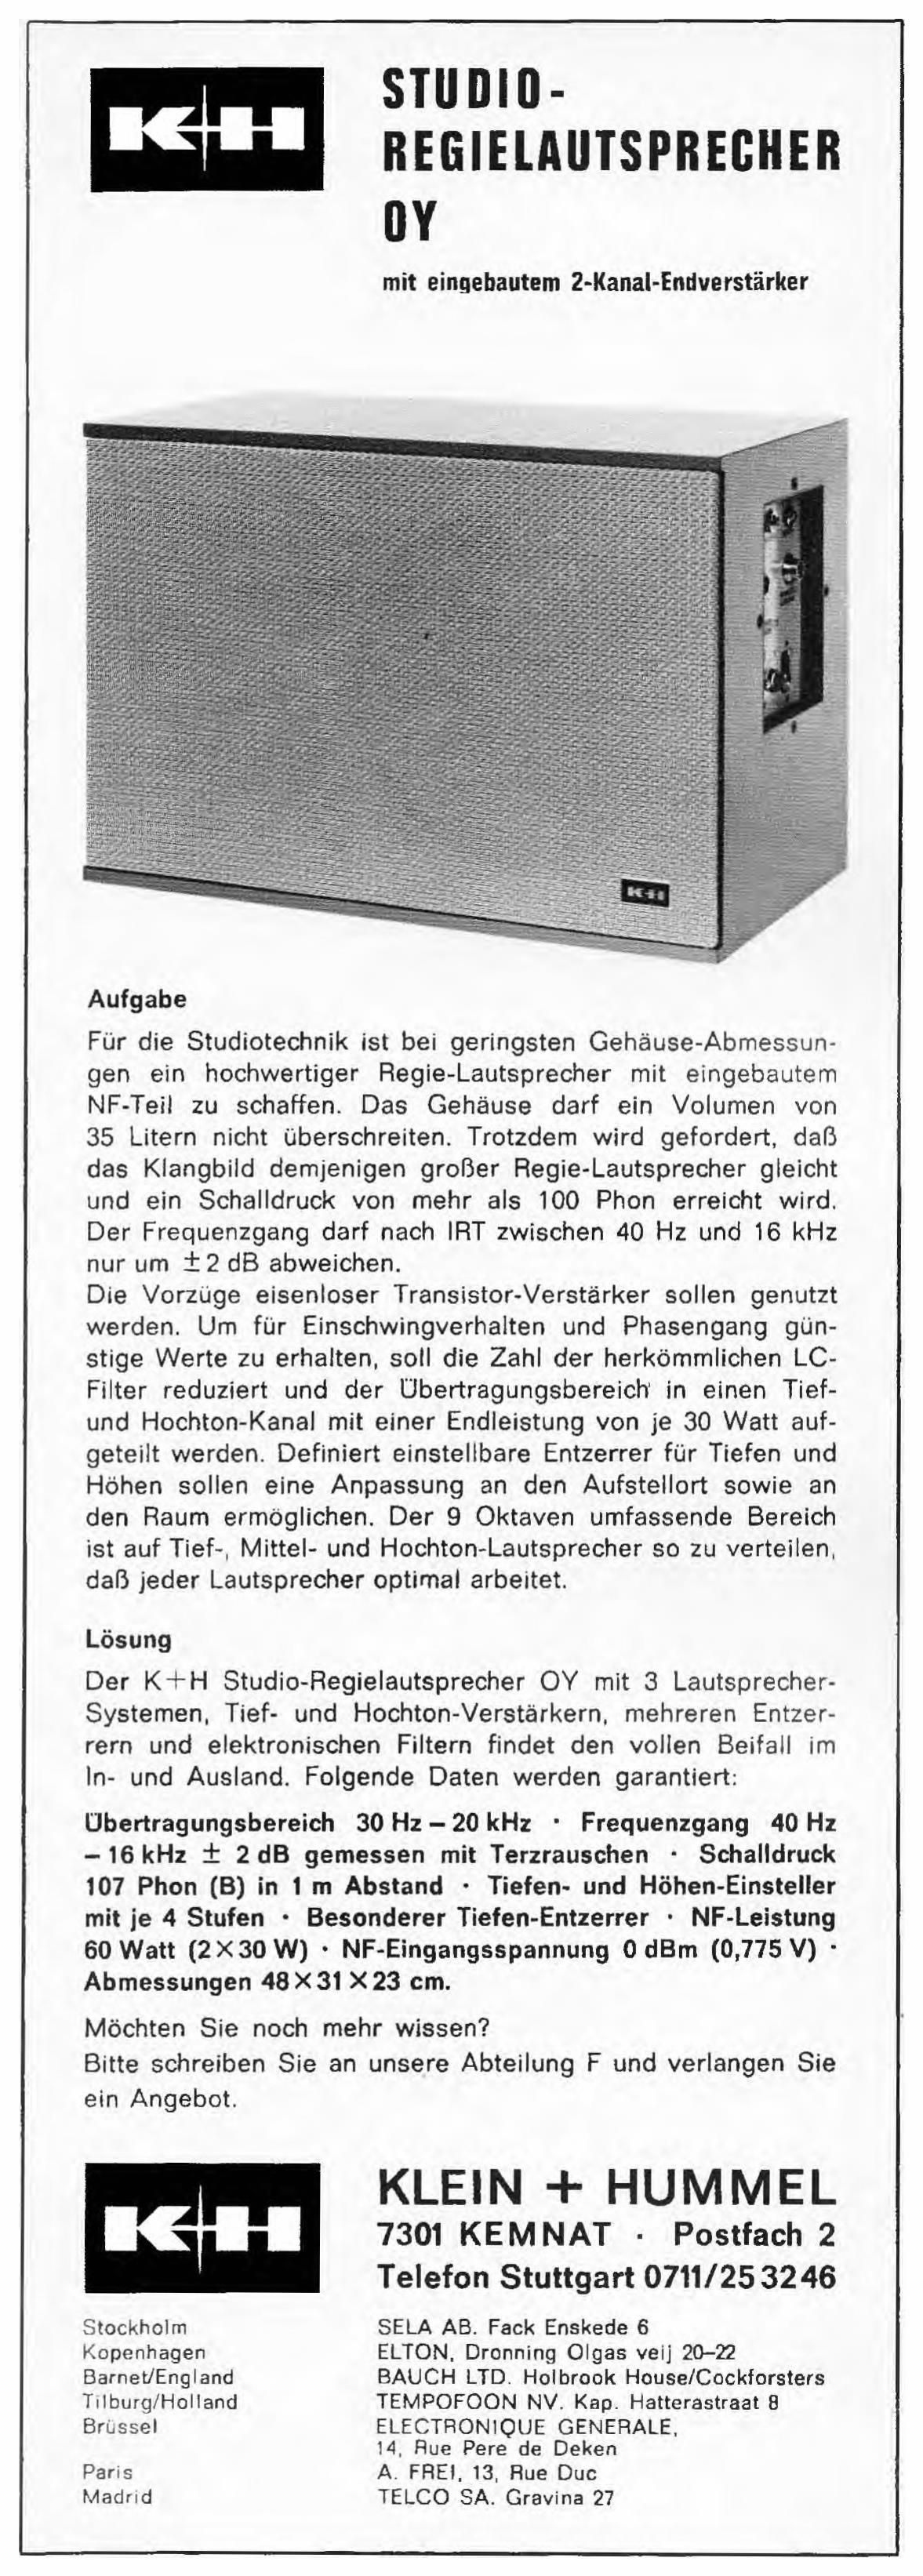 Klein +Hummel 1968 1.jpg